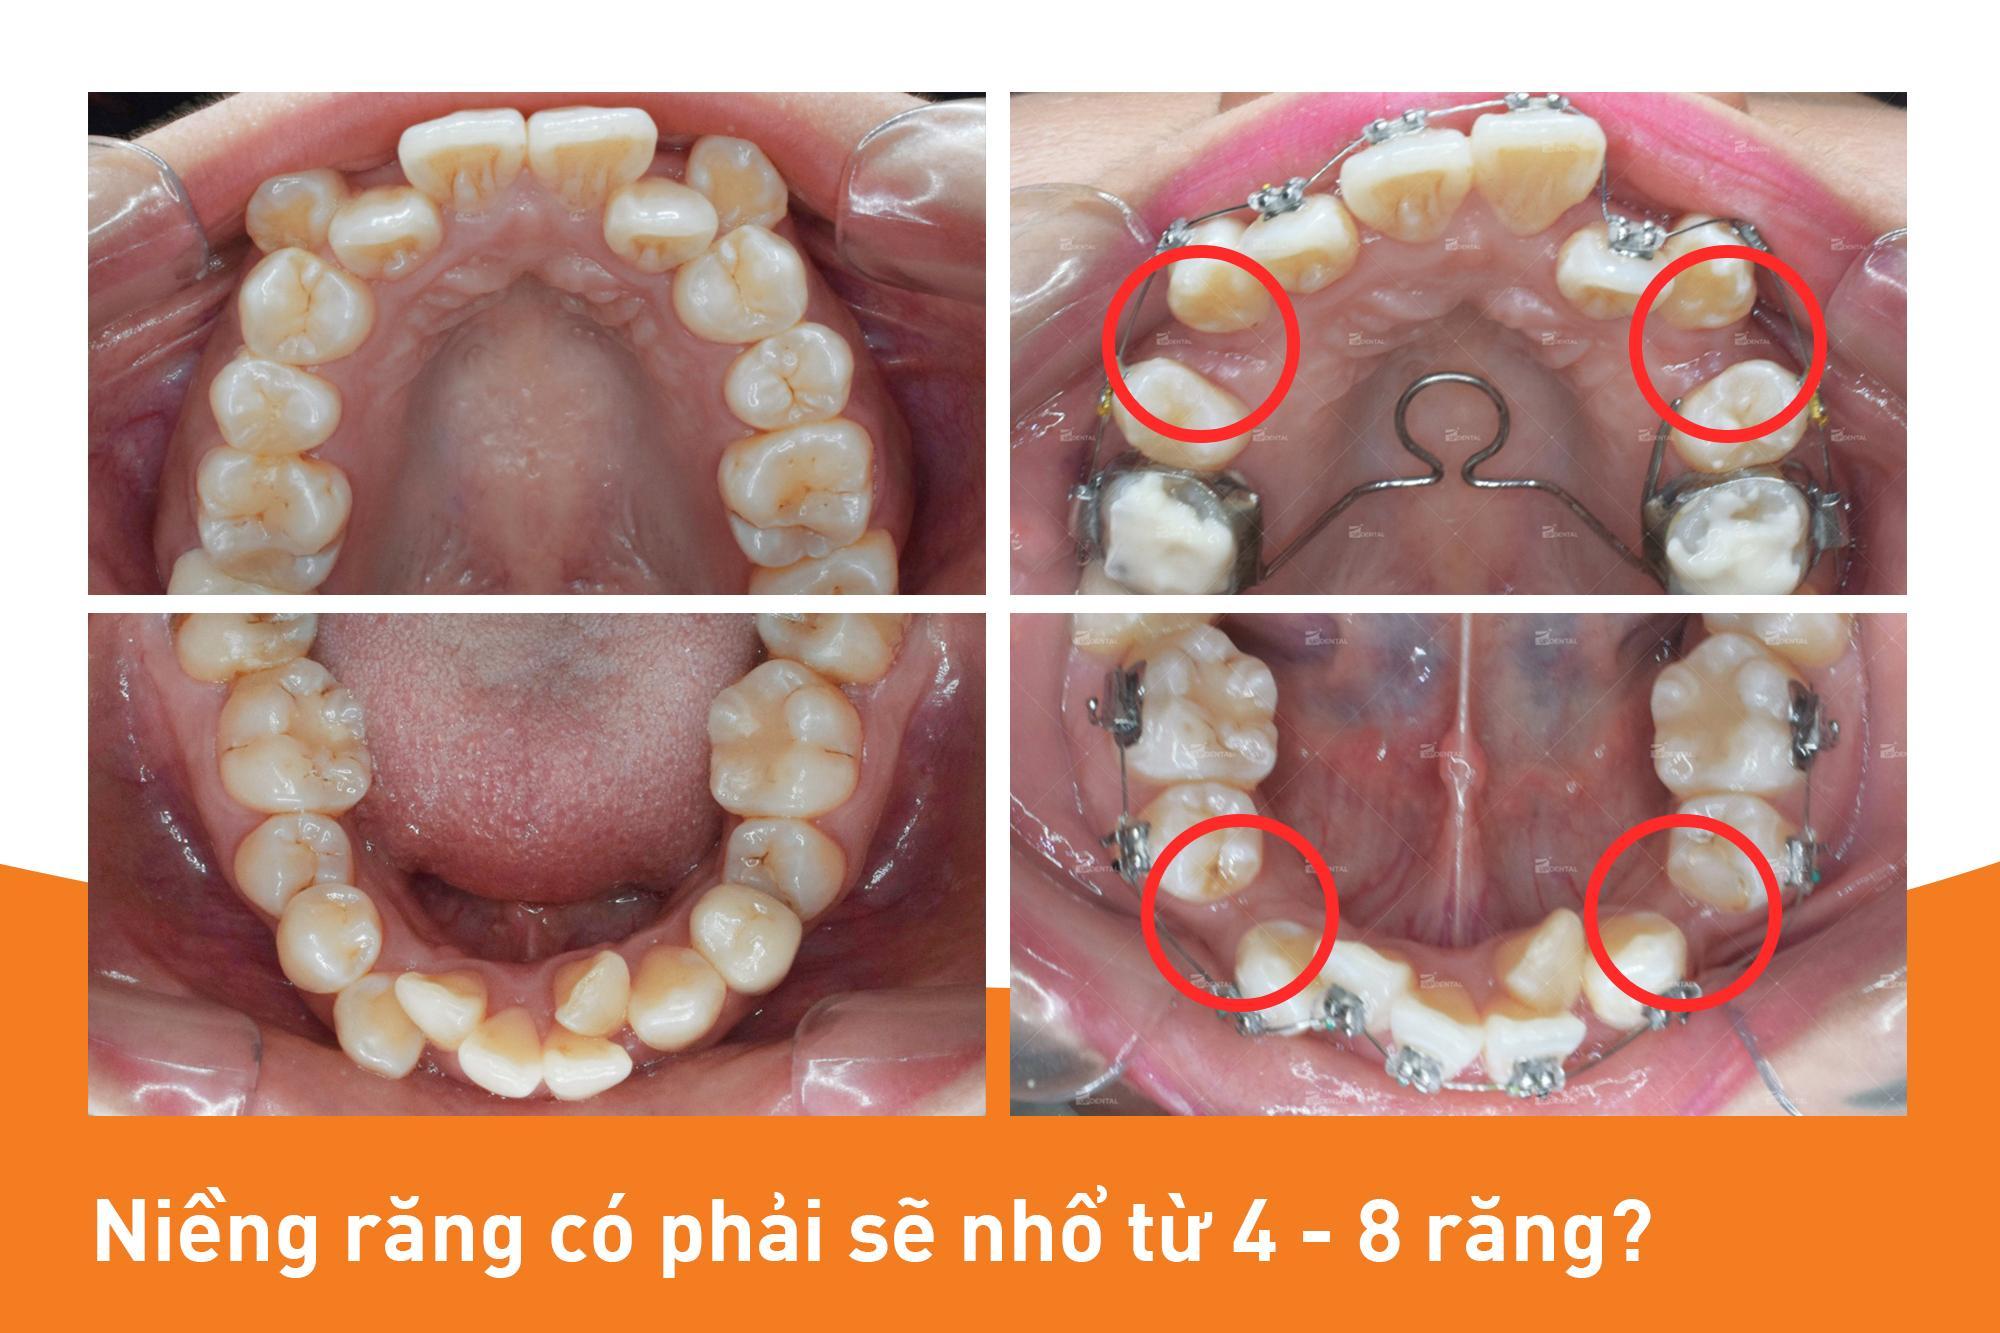 Các vị trí răng thường sẽ nhổ khi niềng răng